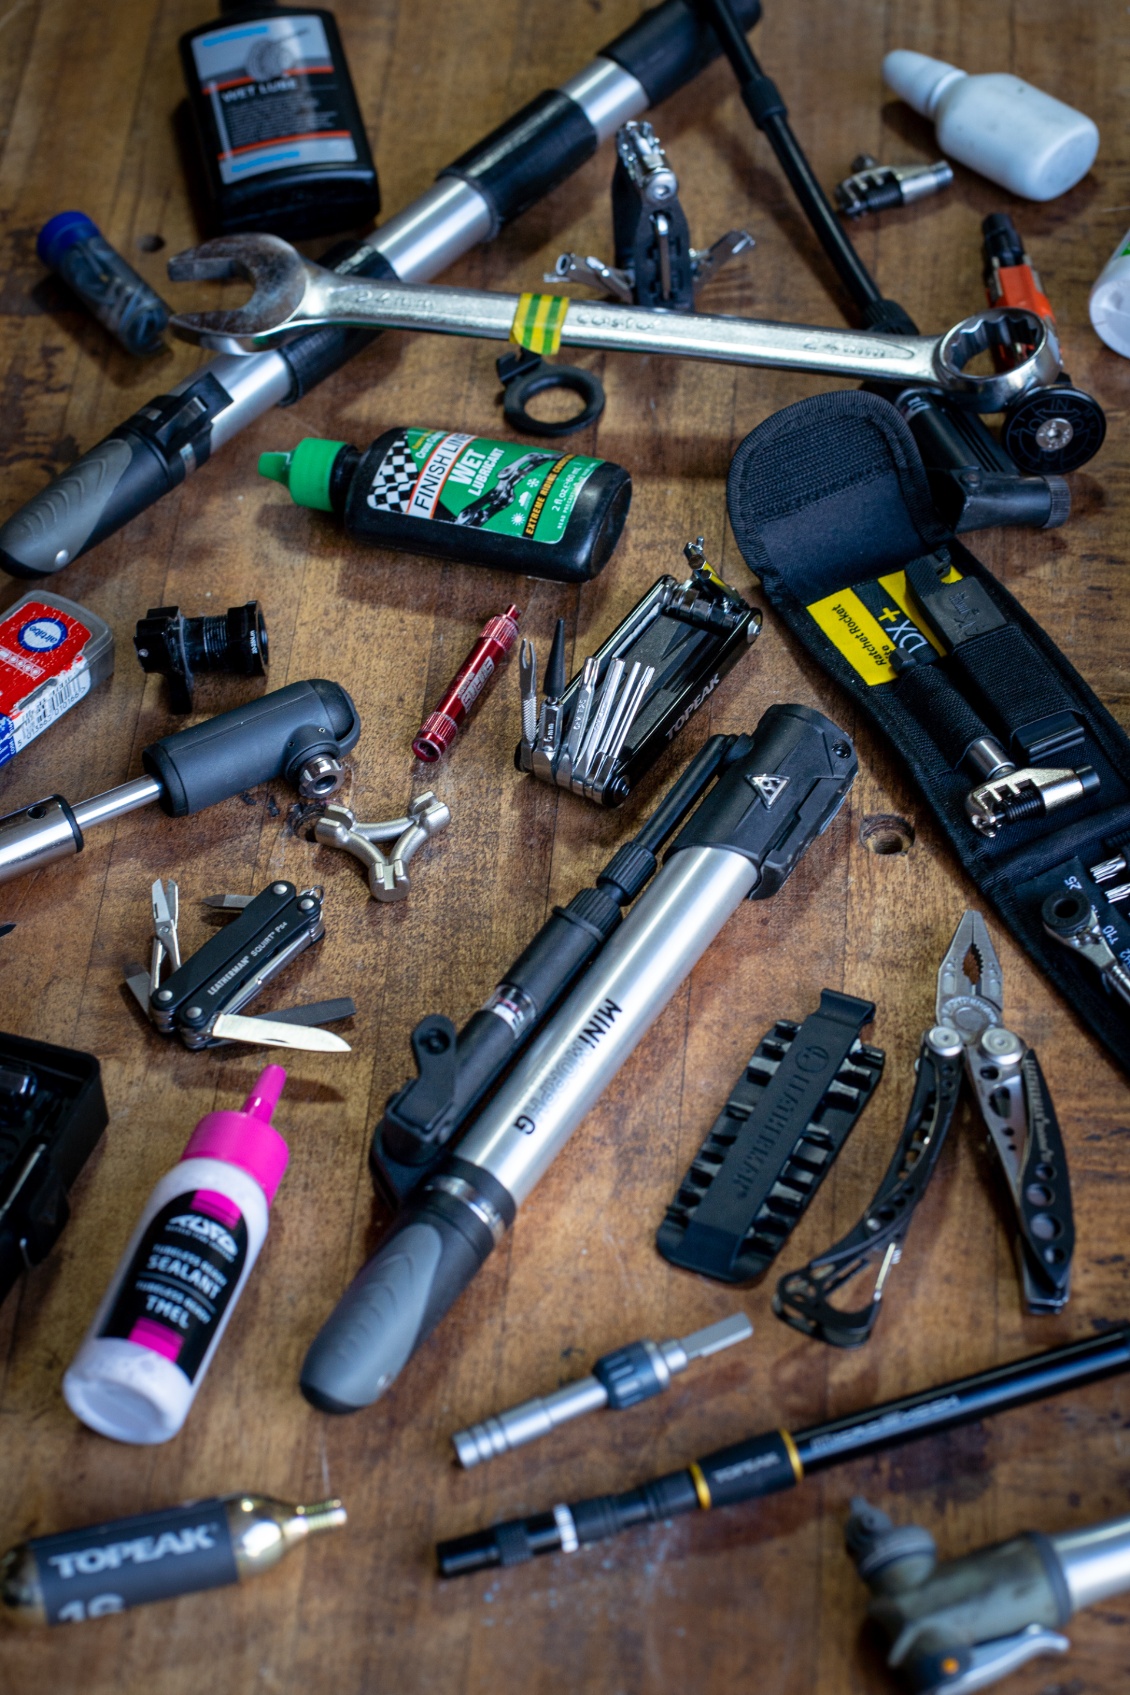 Choisir les bons outils et préparer sa trousse à outils !
Photo Carnets d'Aventures